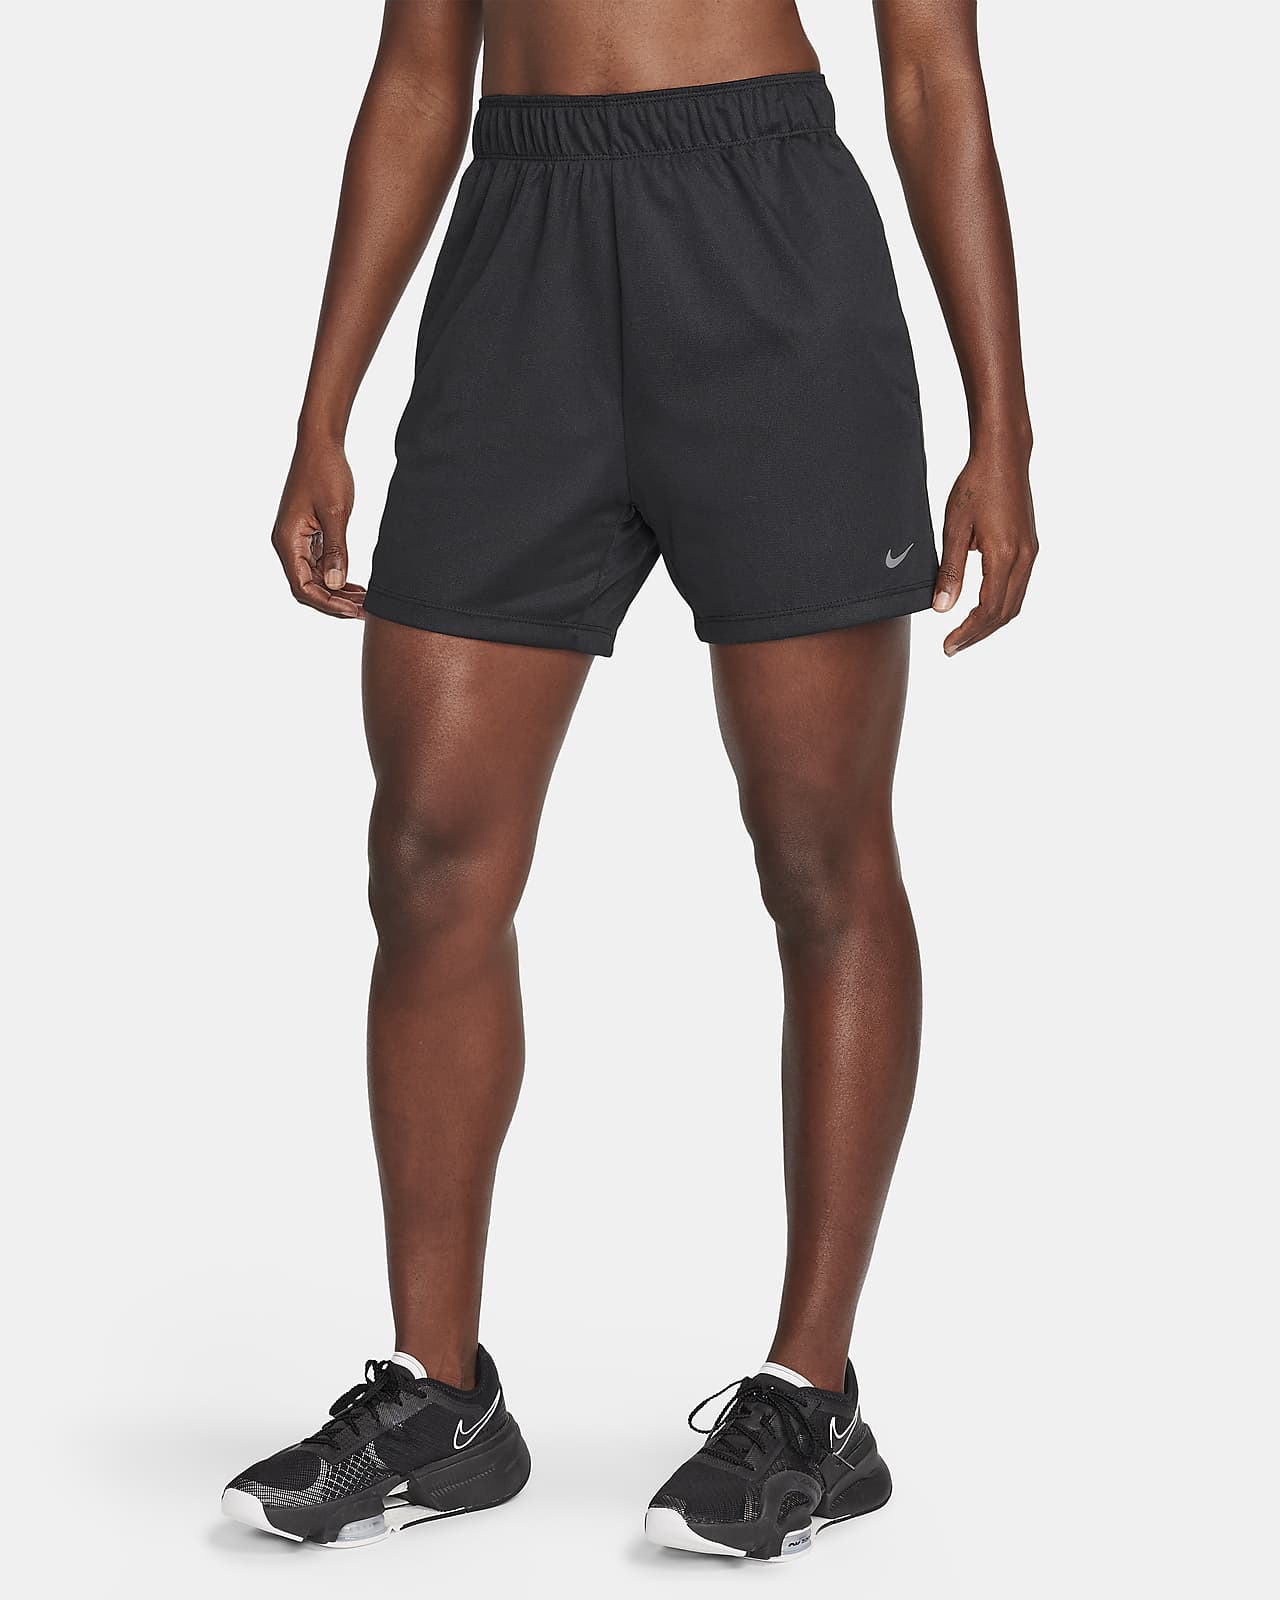 Γυναικείο σορτς μεσαίου ύψους fitness χωρίς επένδυση Dri-FIT Nike Attack 13 cm